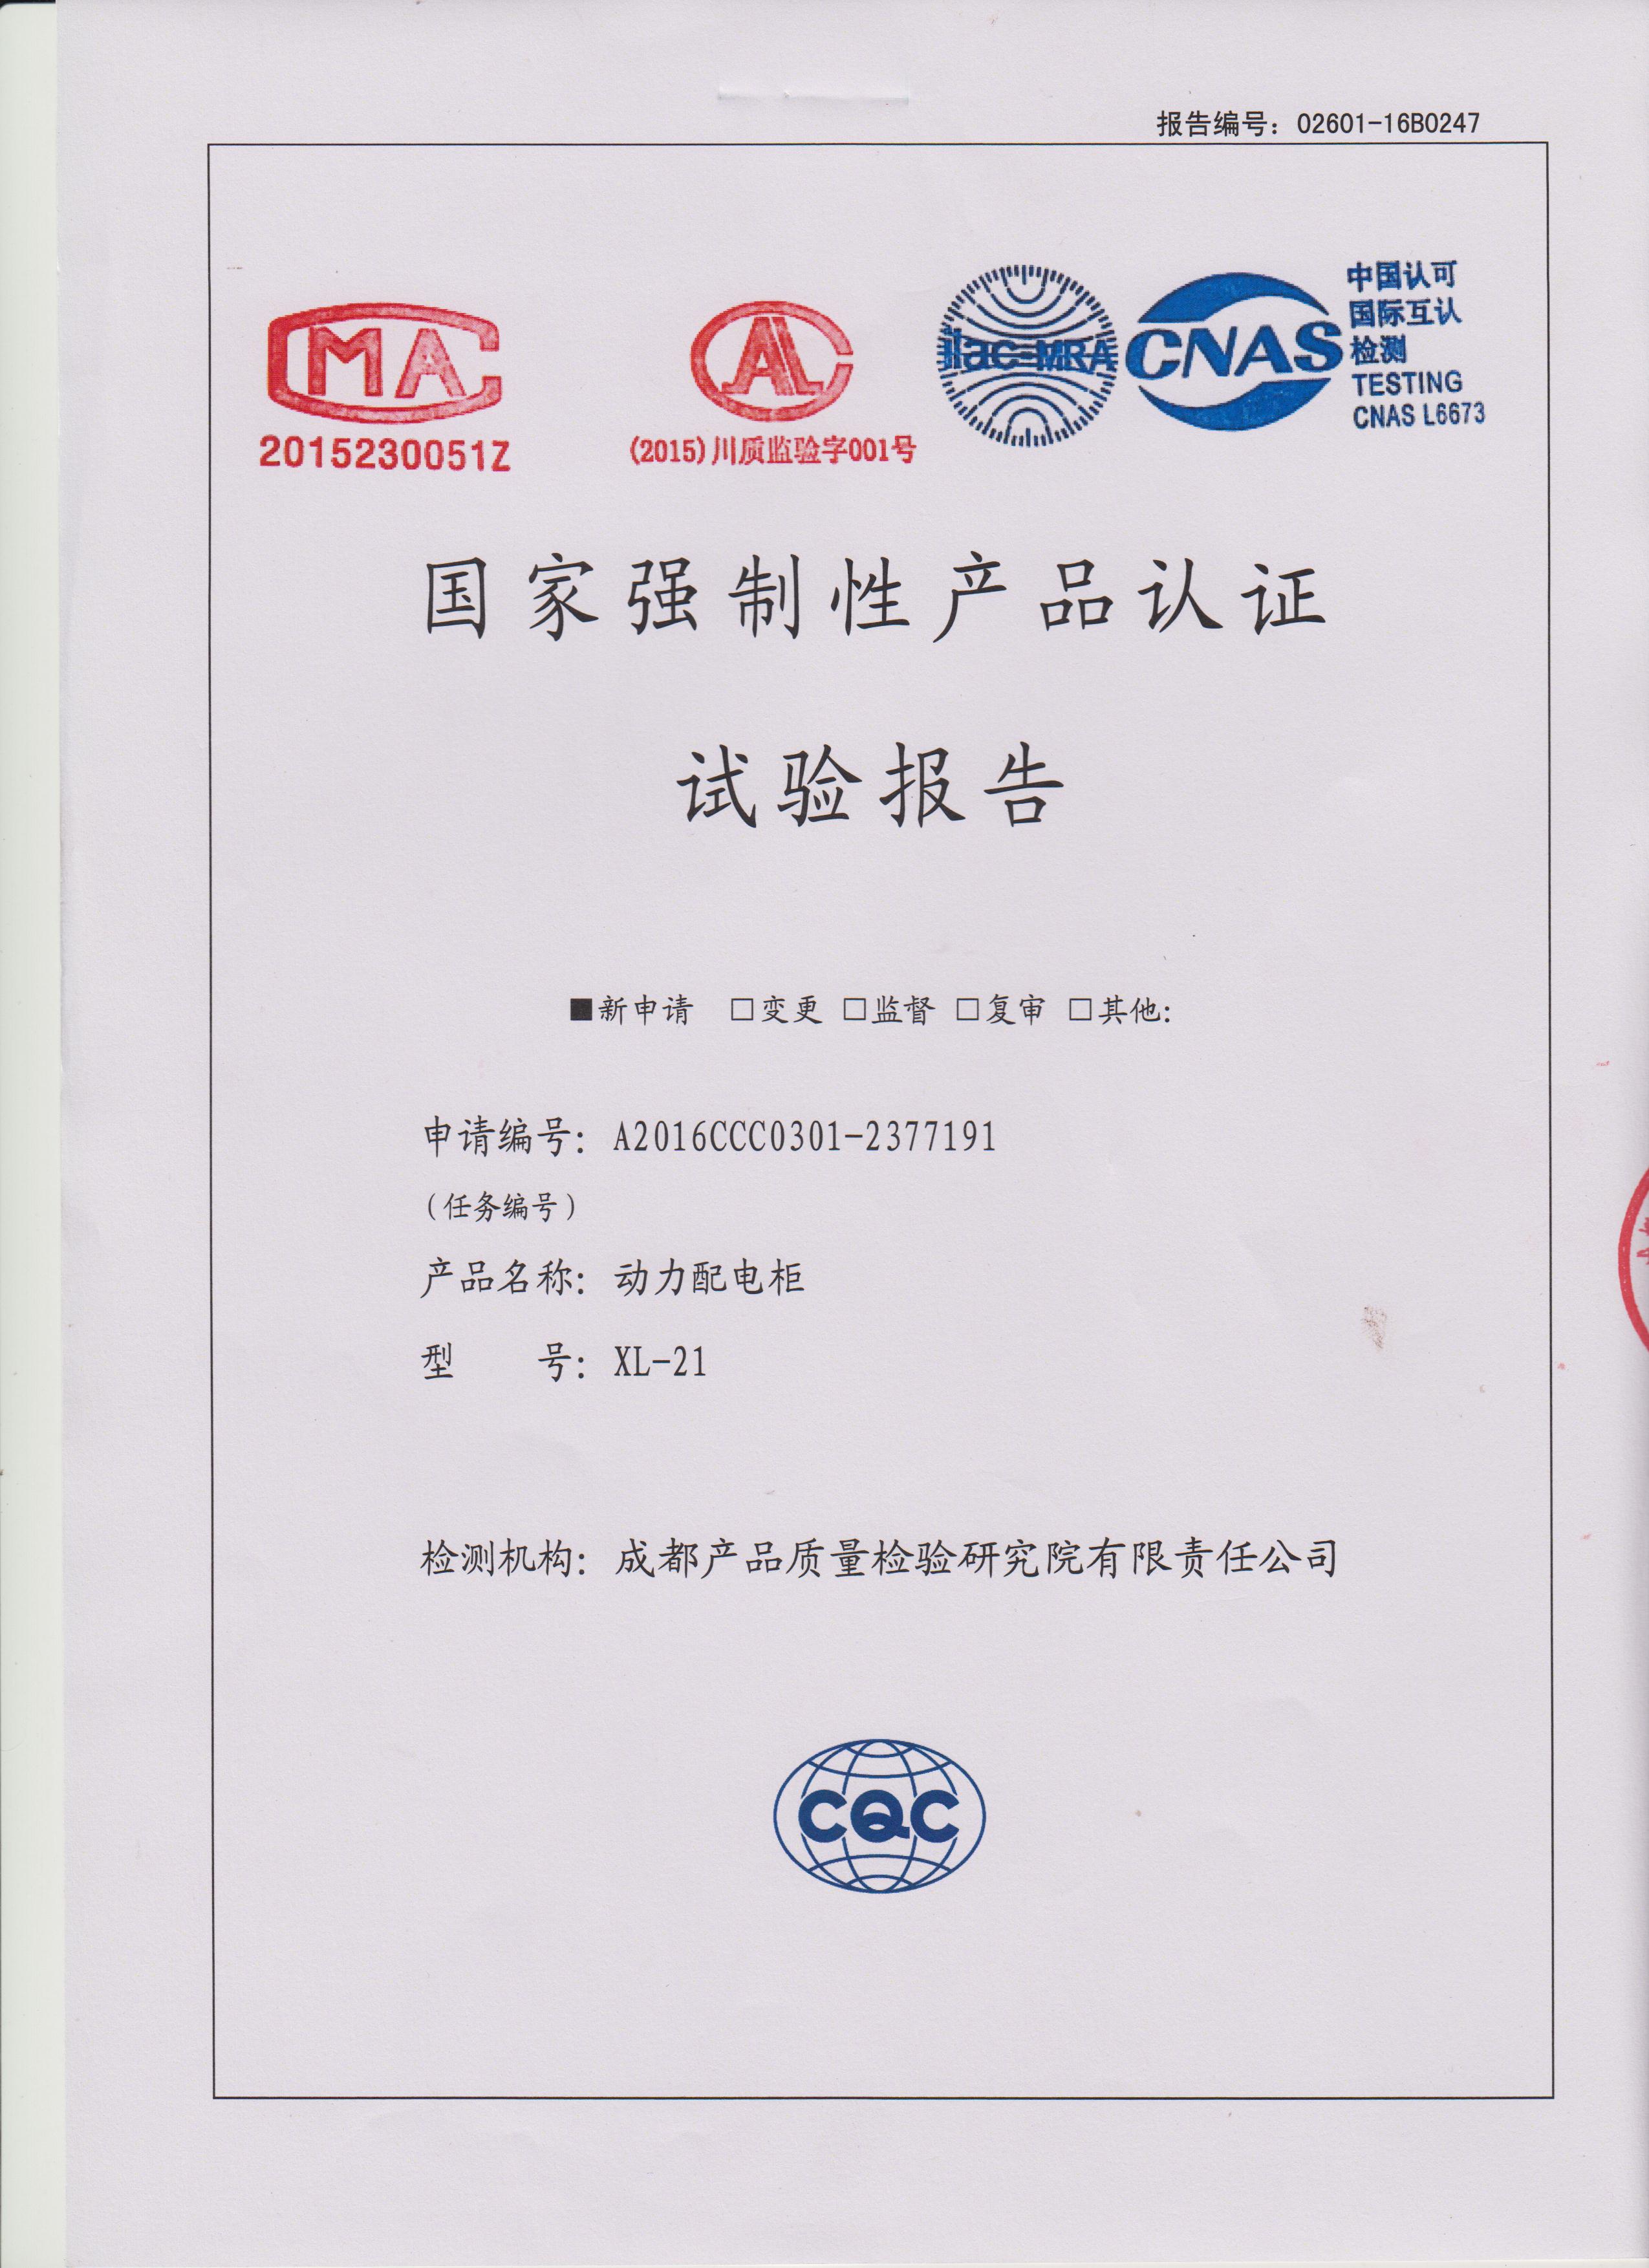 動力配電櫃XL-21檢驗報告(gao)